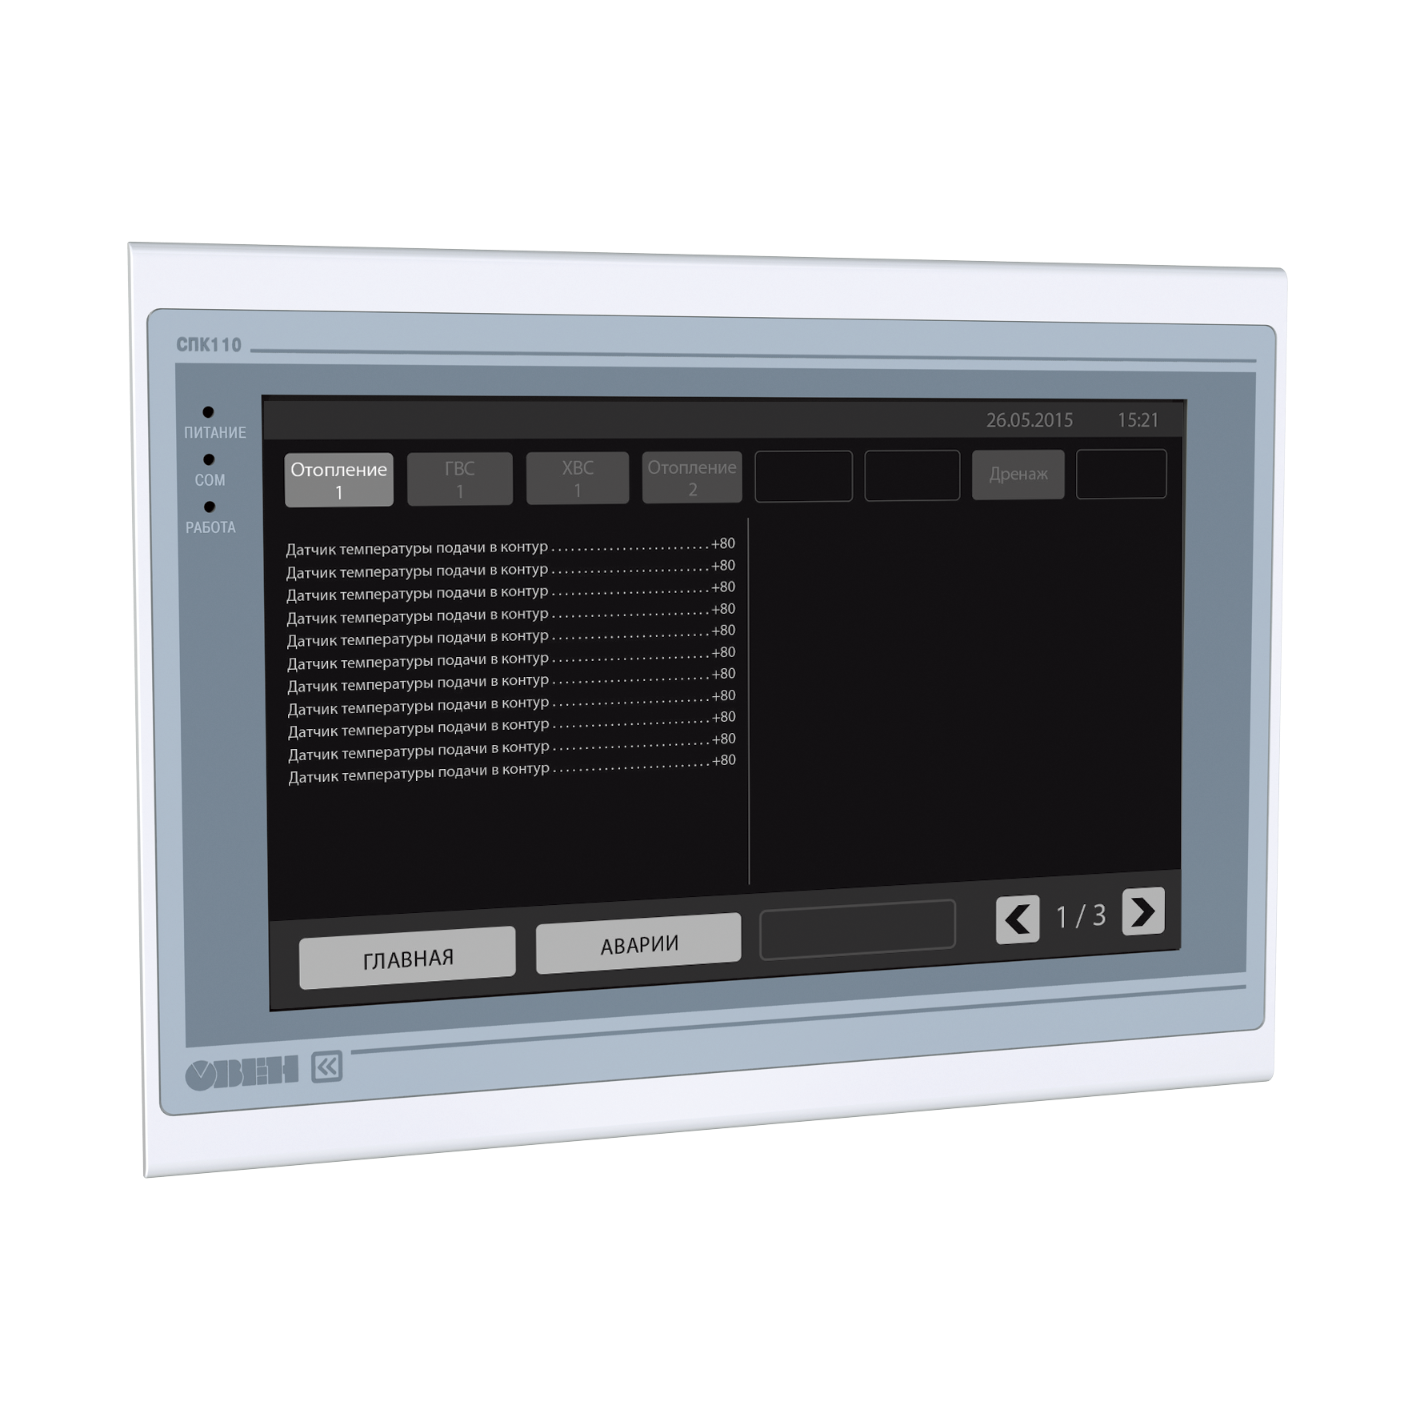 СПК110 Контроллер с сенсорным экраном 10.2” для локальных систем